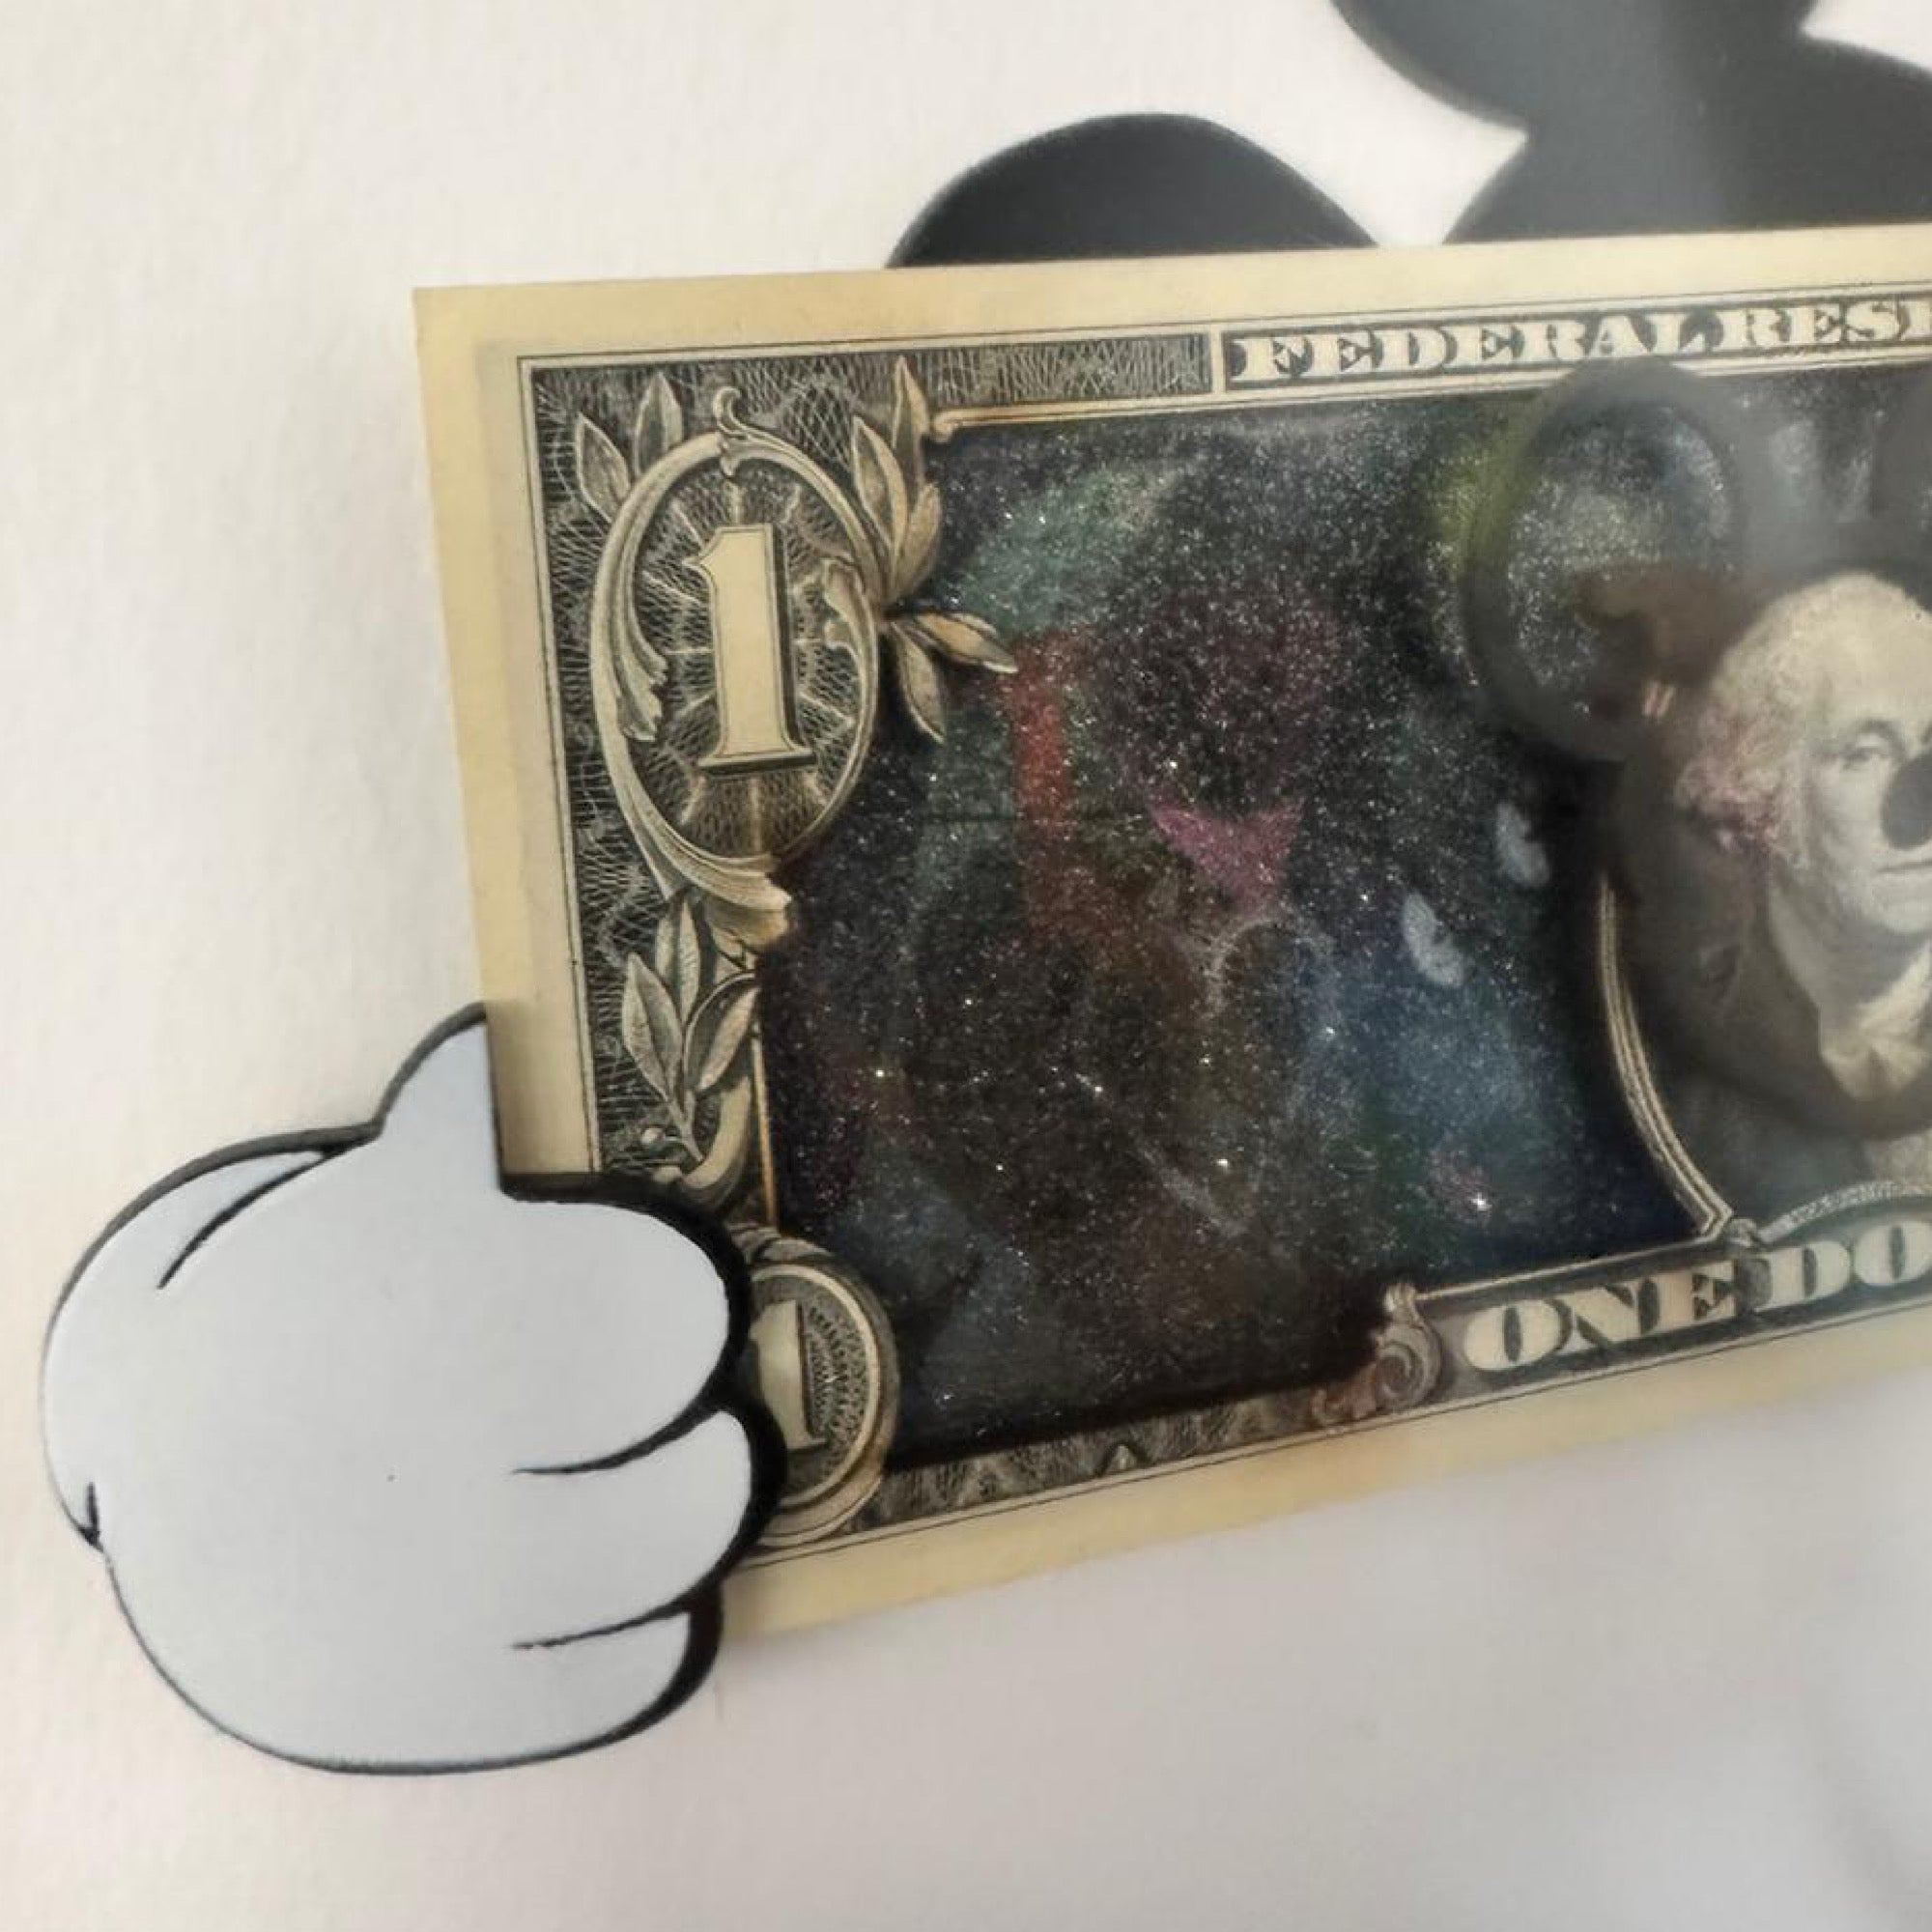 Mickey thumbs dollar